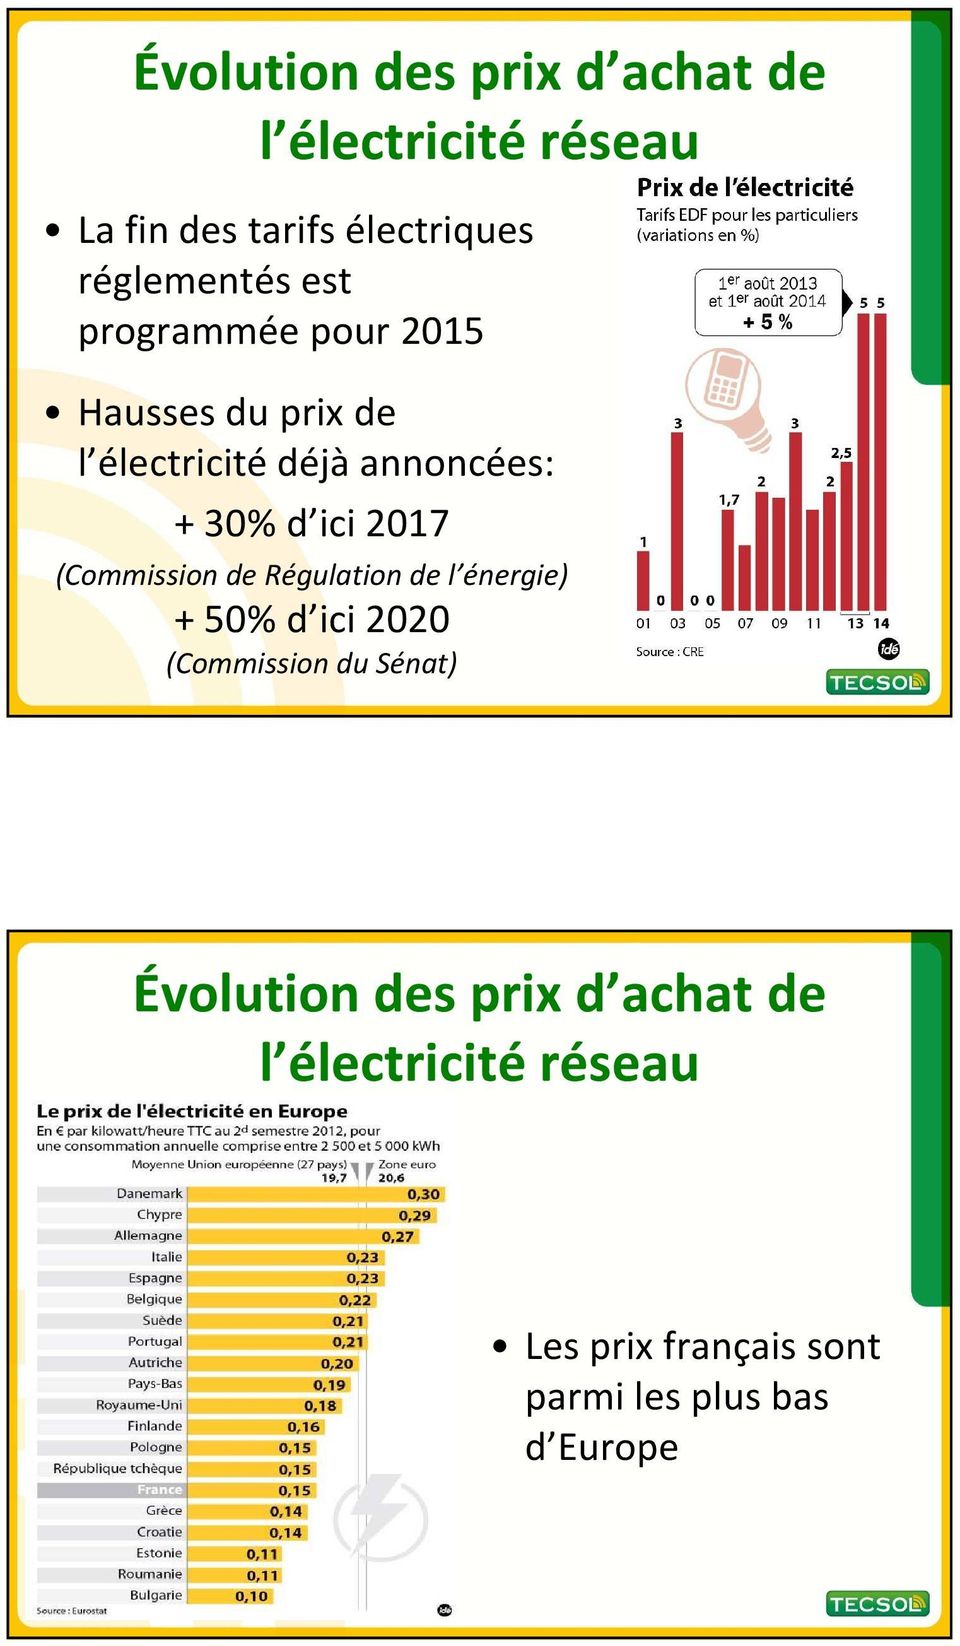 30% d ici 2017 (Commission de Régulation de l énergie) + 50% d ici 2020 (Commission du